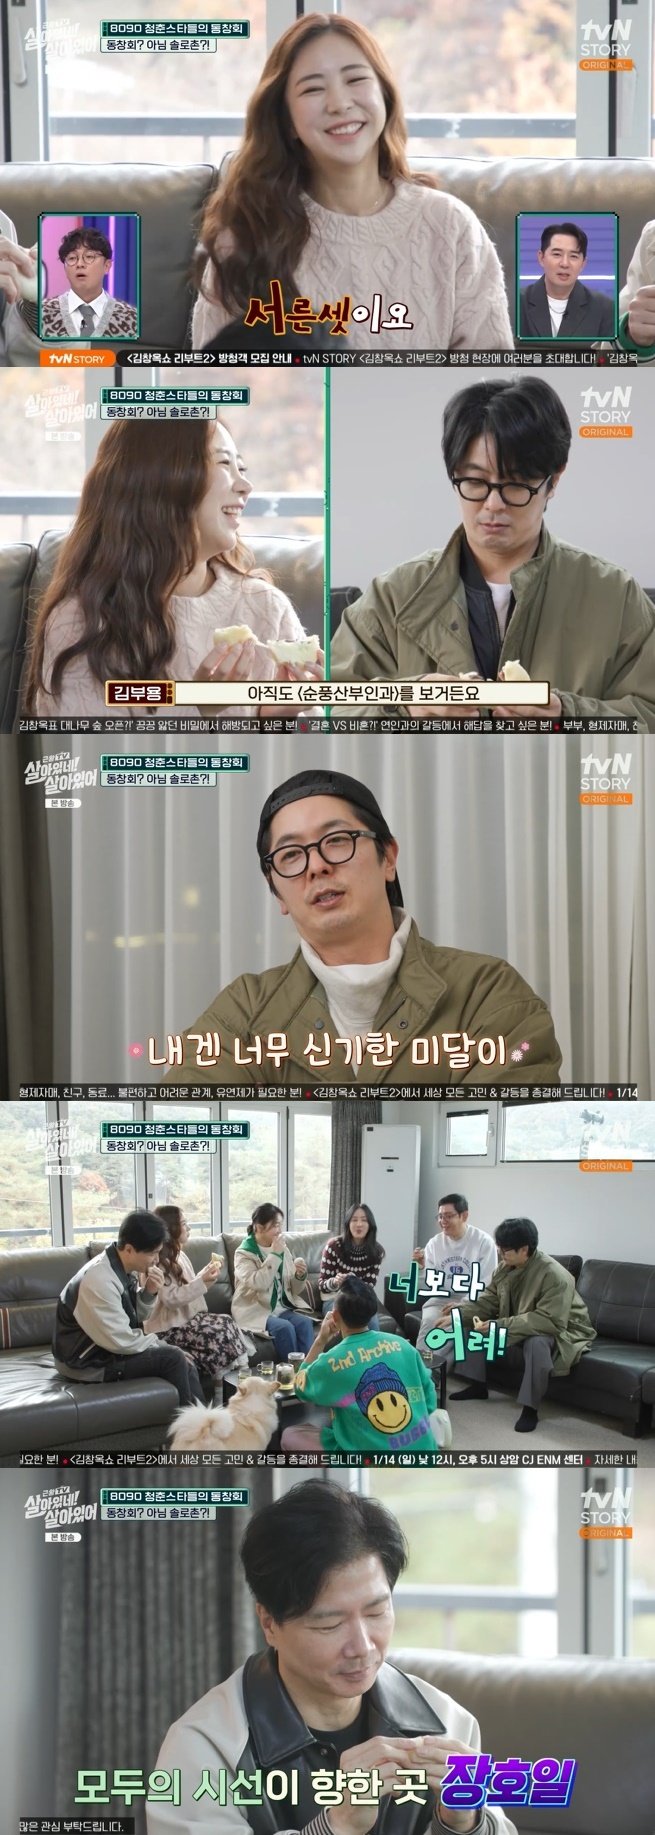 김부용, '미달이' 김성은 나이에 깜짝…"아직도 '순풍' 보는데 신기해"